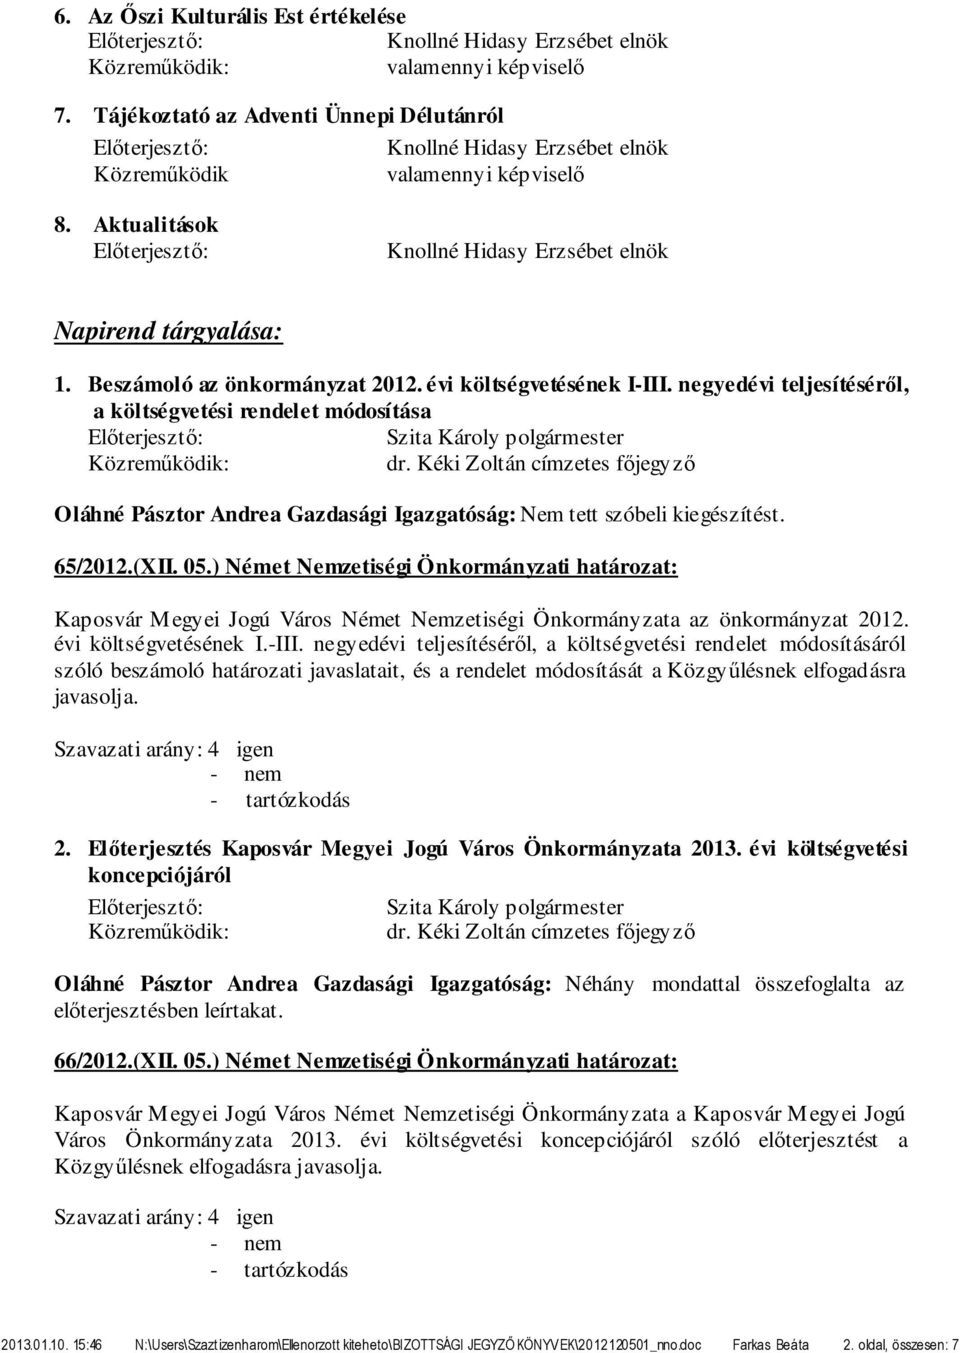 ) Német Nemzetiségi Önkormányzati határozat: Kaposvár Megyei Jogú Város Német Nemzetiségi Önkormányzata az önkormányzat 2012. évi költségvetésének I.-III.